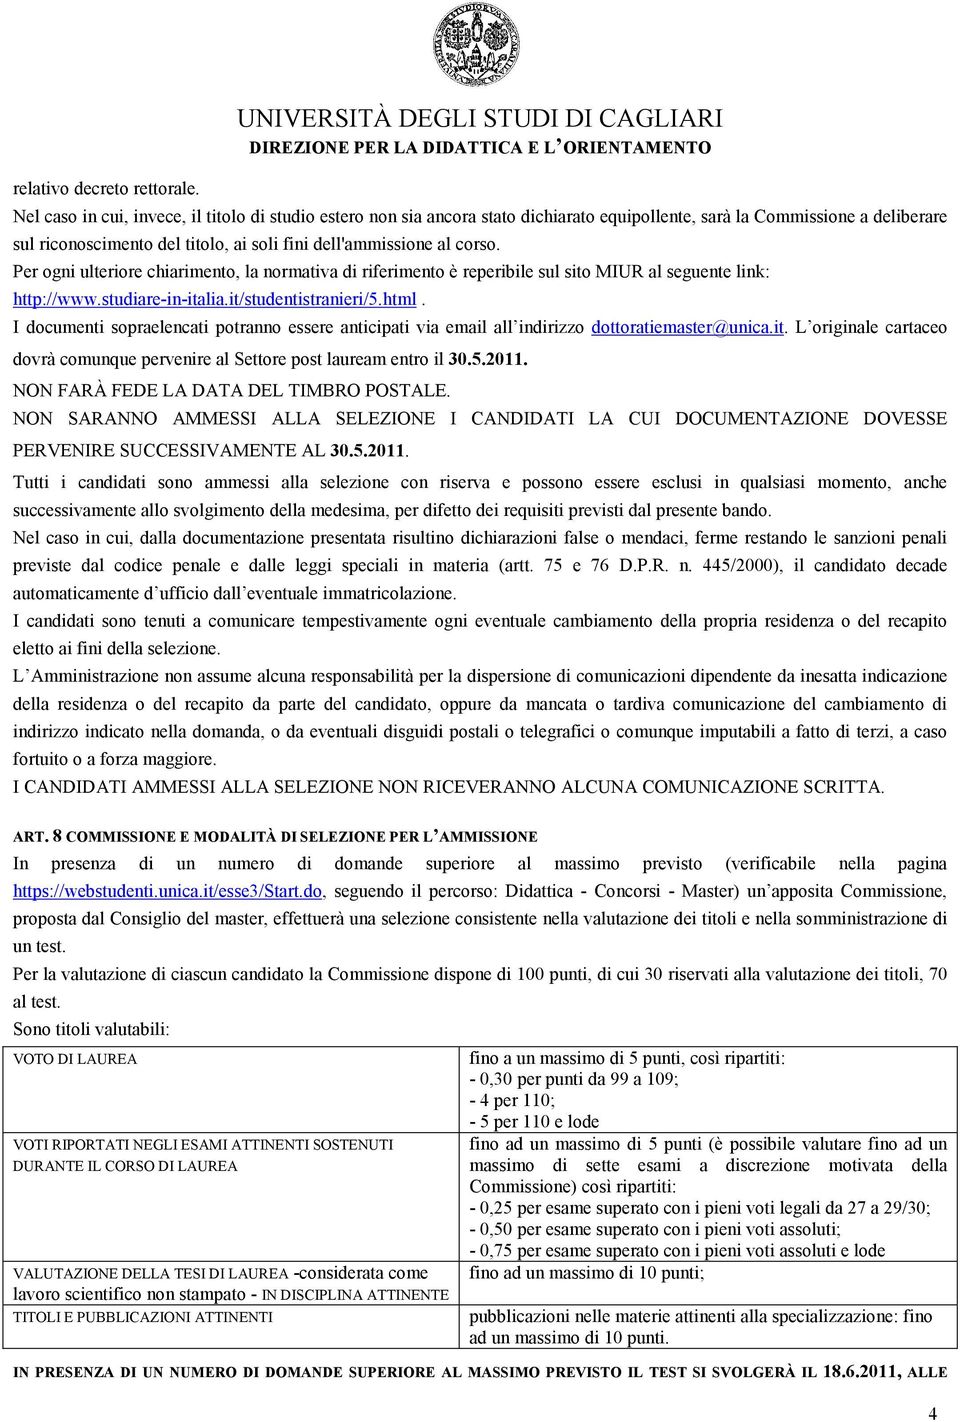 soli fini dell'ammissione al corso. Per ogni ulteriore chiarimento, la normativa di riferimento è reperibile sul sito MIUR al seguente link: http://www.studiare-in-italia.it/studentistranieri/5.html.